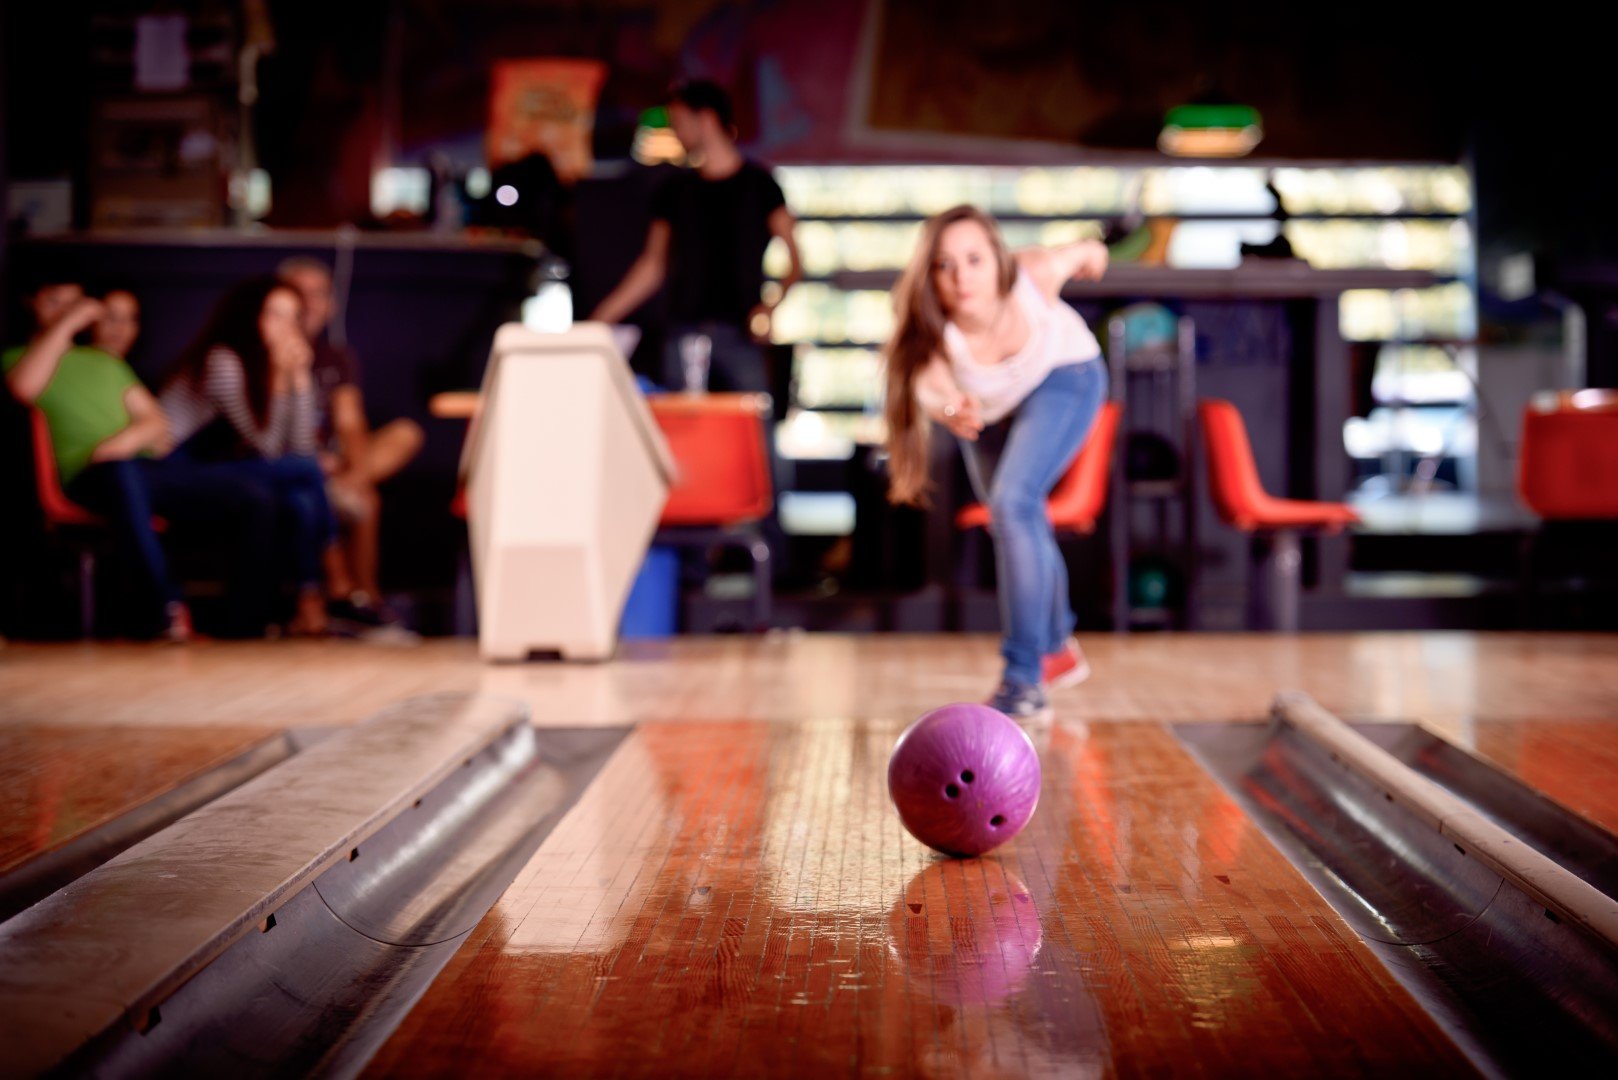 Gutter Balls & Kingpins: Bowling Trivia